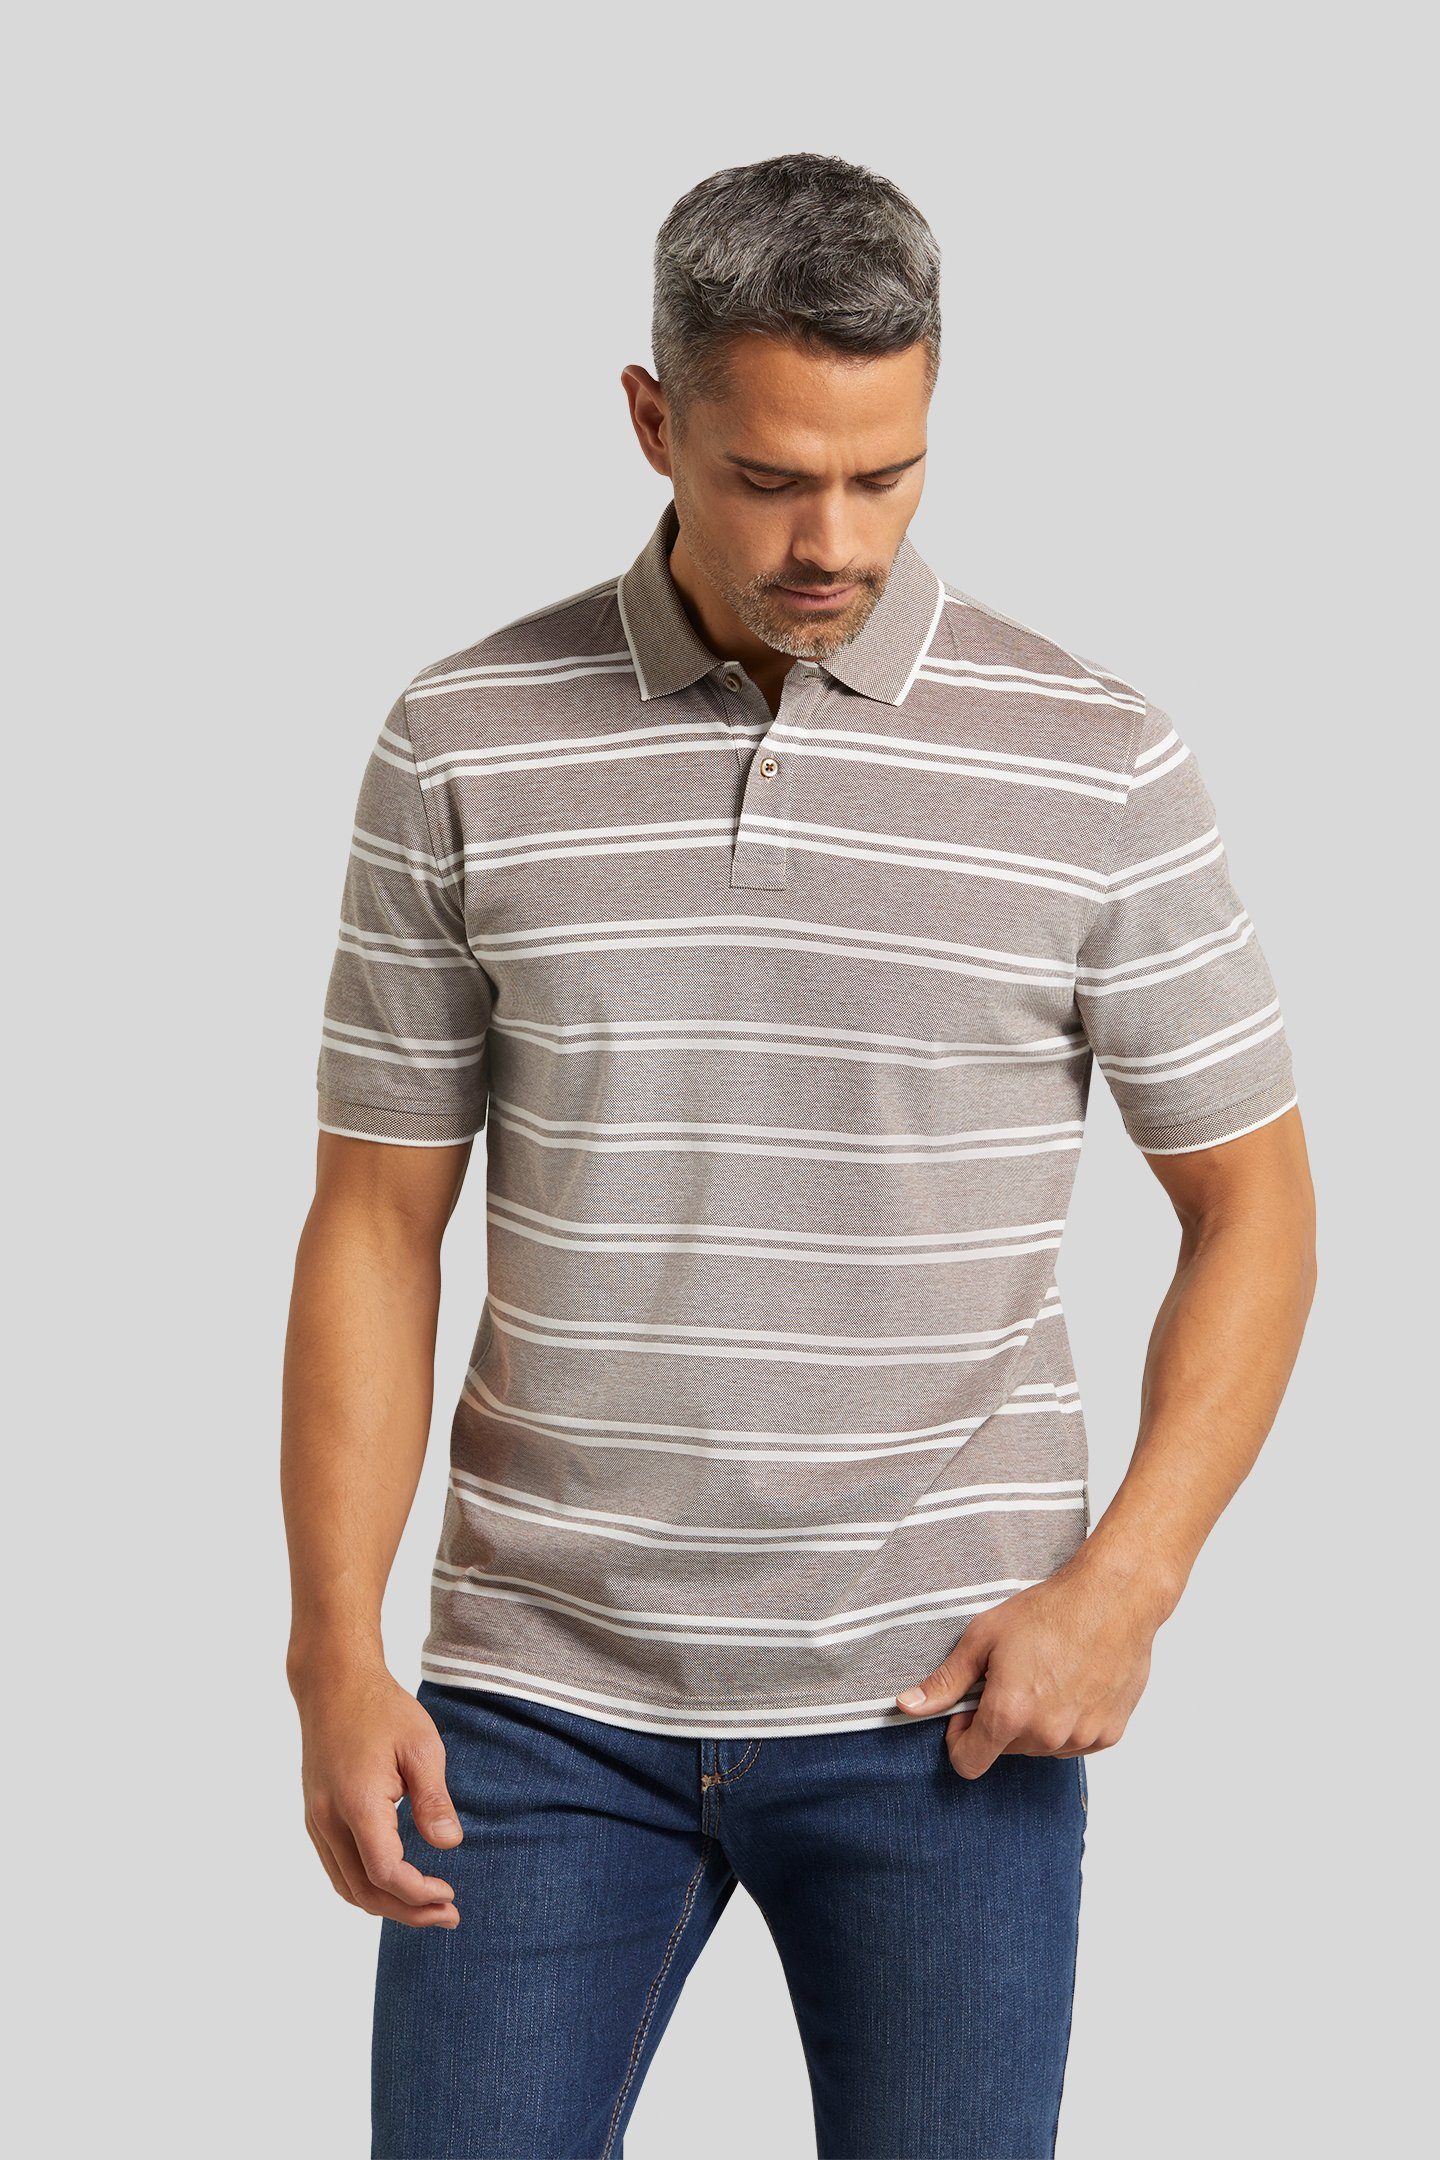 bugatti Poloshirt mit einem Streifen-Muster | Poloshirts